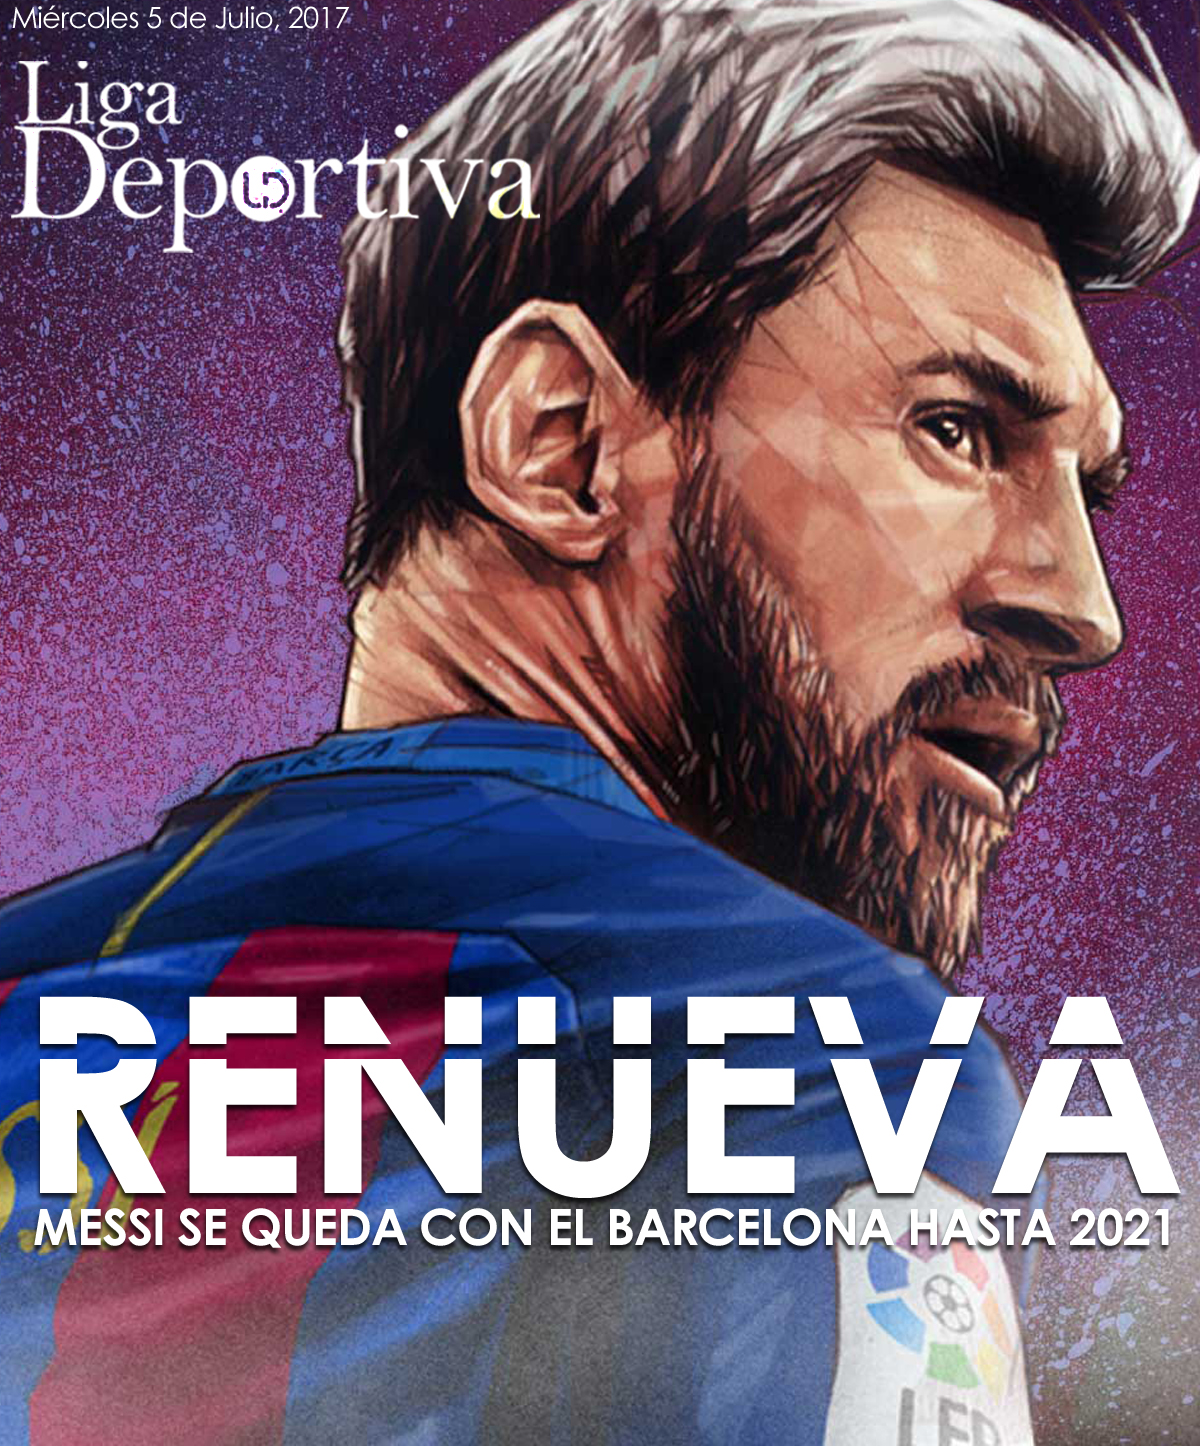 Lionel Messi renueva contrato con el Barcelona hasta 2021 